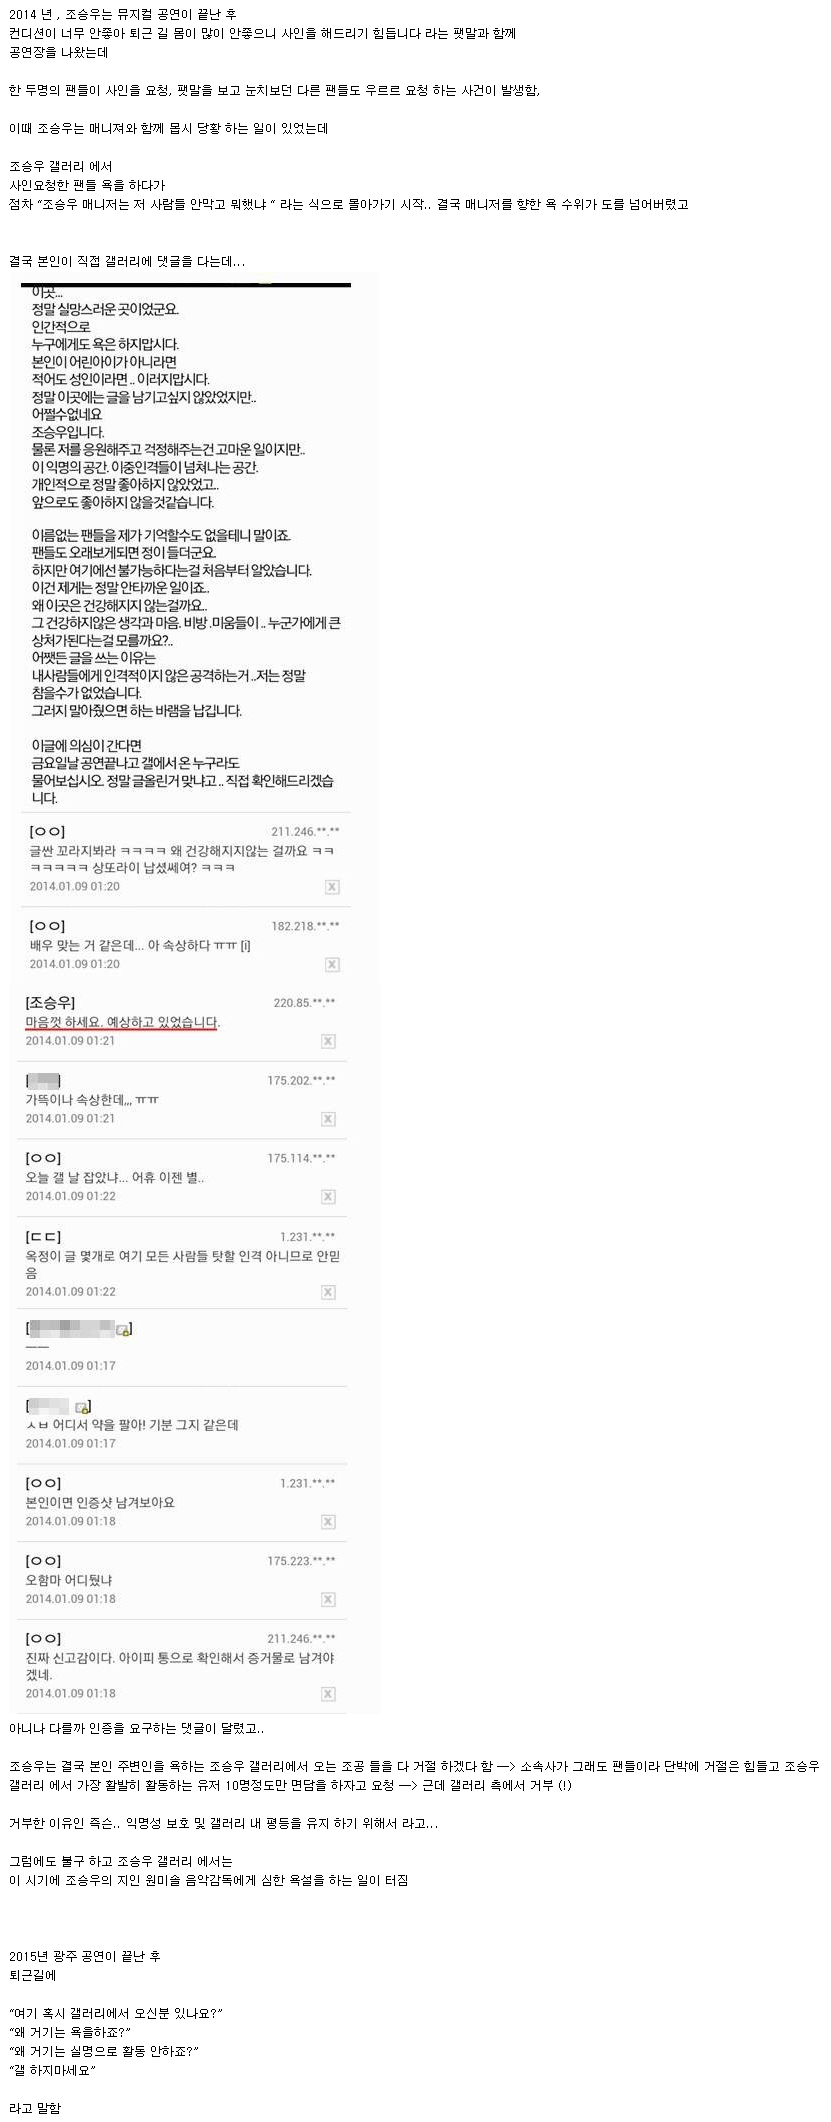 배우 조승우가 DC인사이드를 싫어하는 이유 .txt - 포텐터진 게시판 - 에펨코리아.png